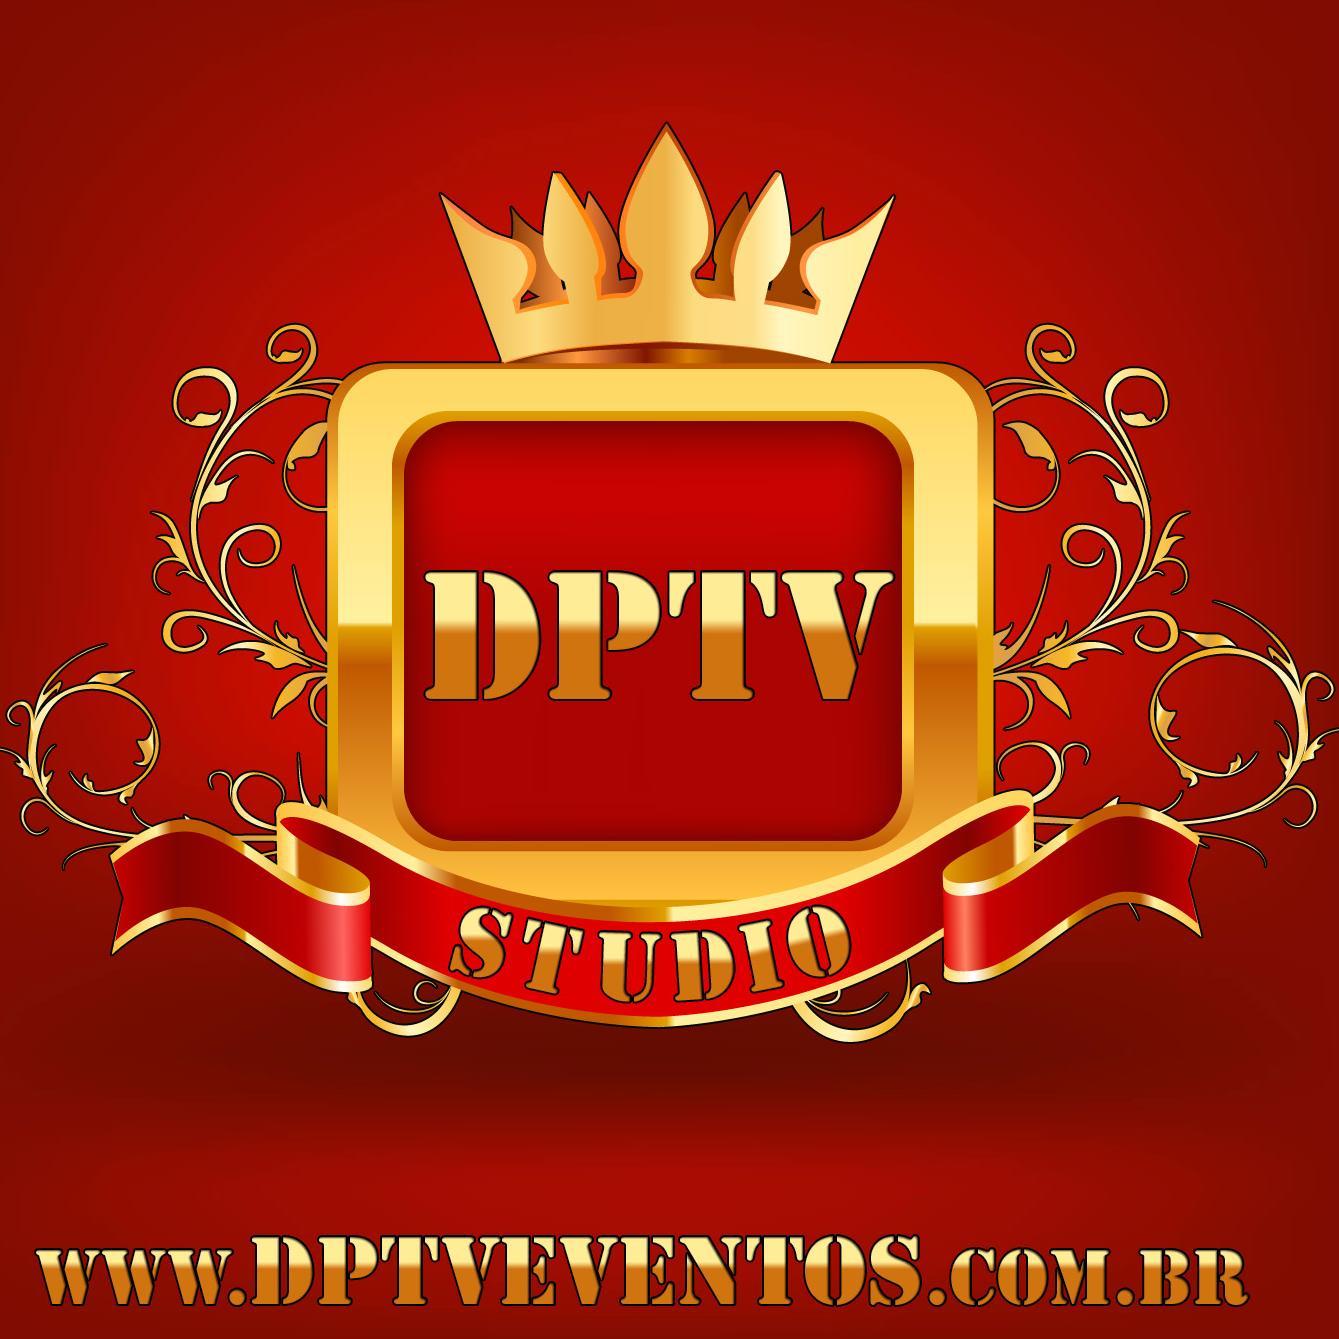 DPTV Produções & Eventos, torna-se referência no segmento de Tecnologia no ano de 2013, devido a excelência na prestação de serviços e negociações.